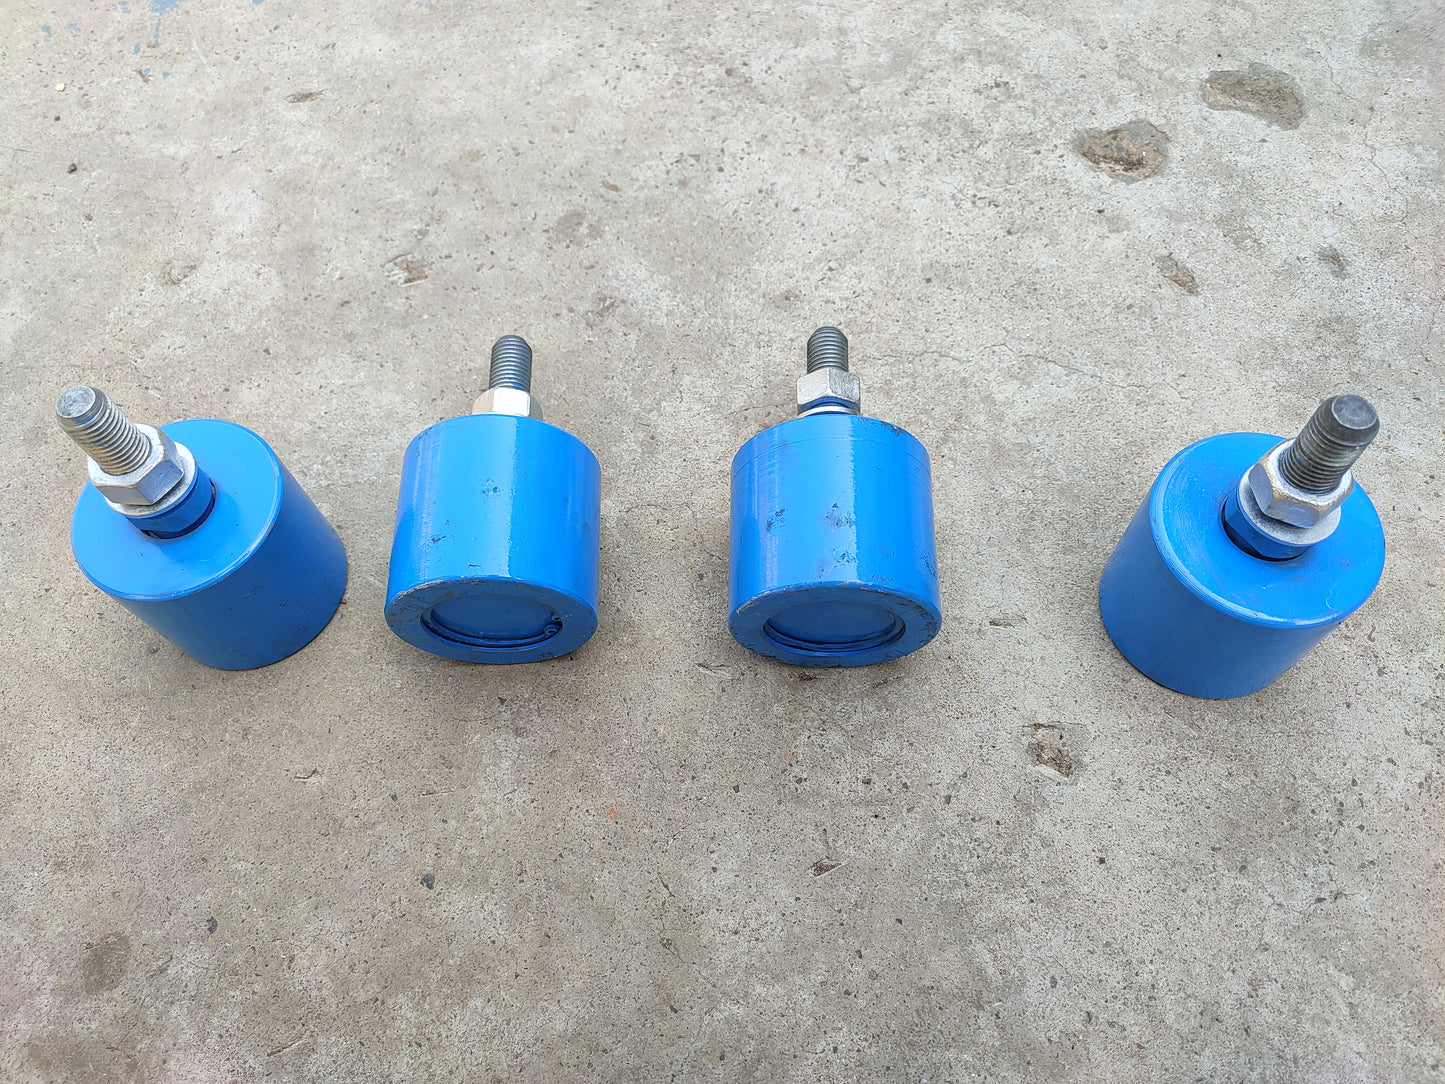 Guide roller 80 mm length 90 mm dia for kiln slip ring